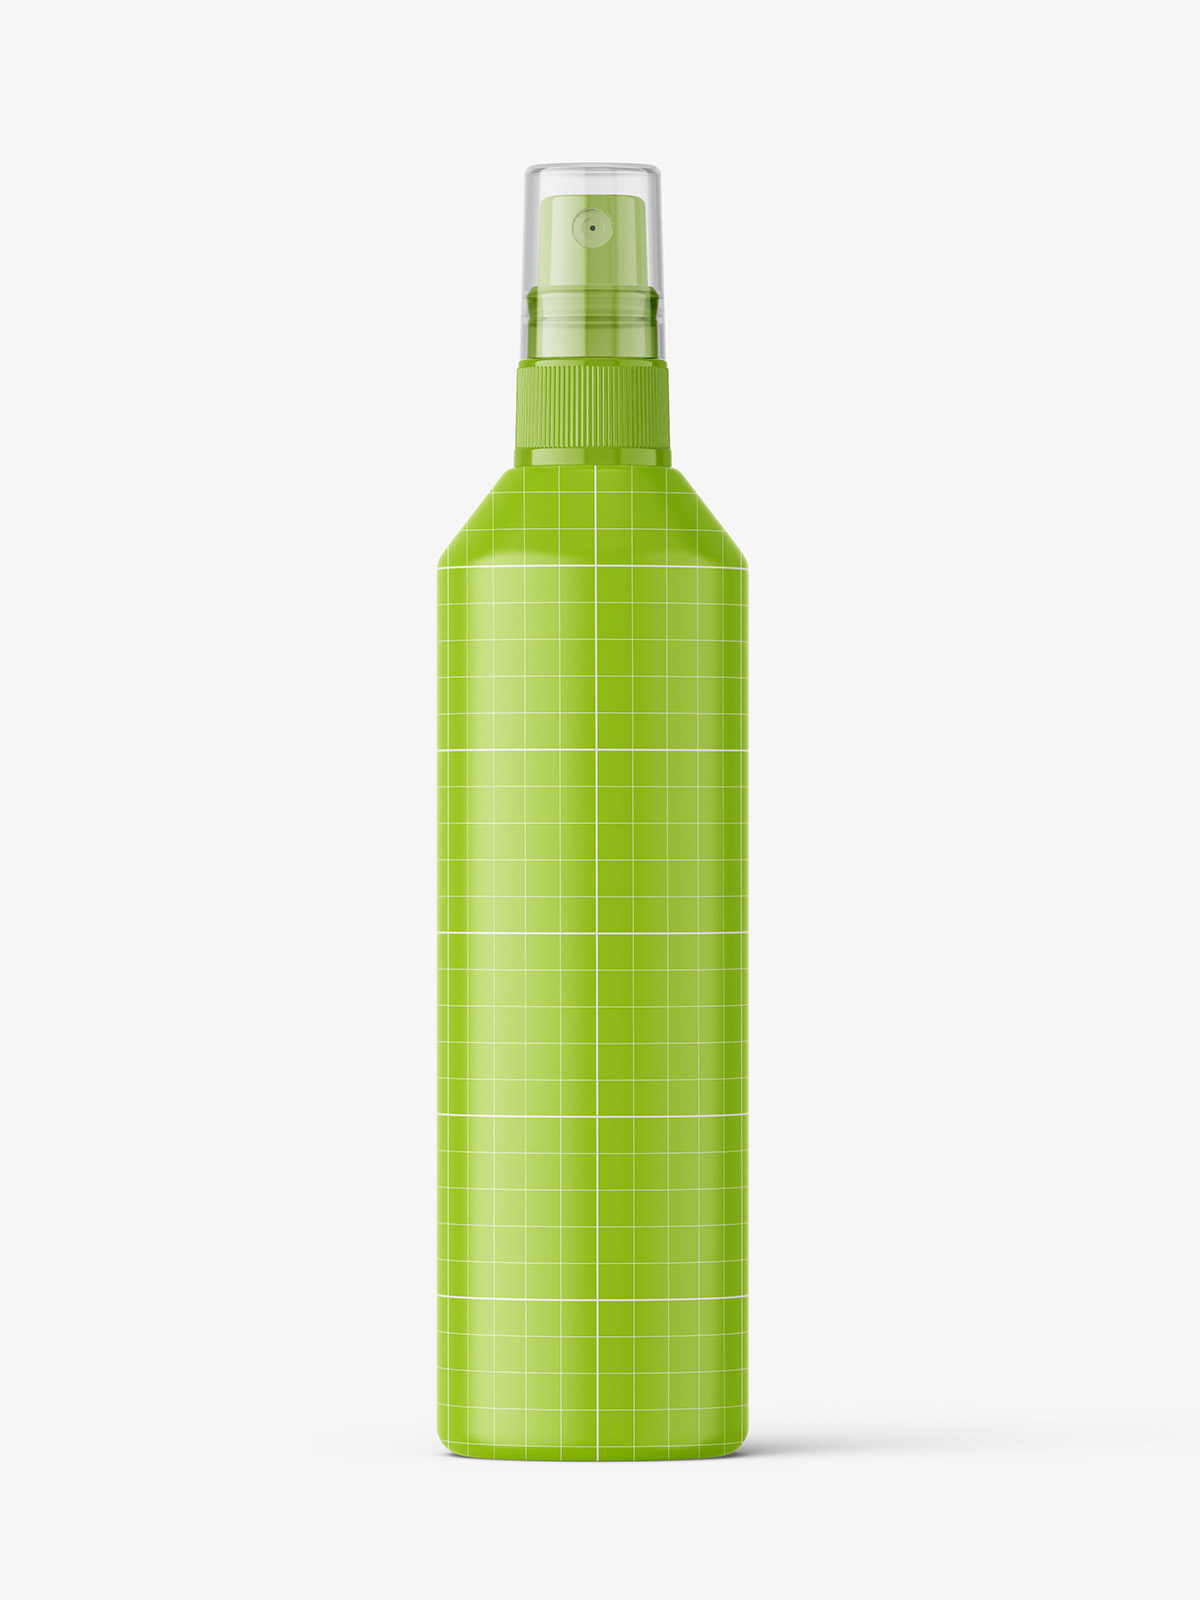 高质量按压式透明喷雾瓶塑料瓶化妆品瓶样机模型Bottle Mockup .psd素材